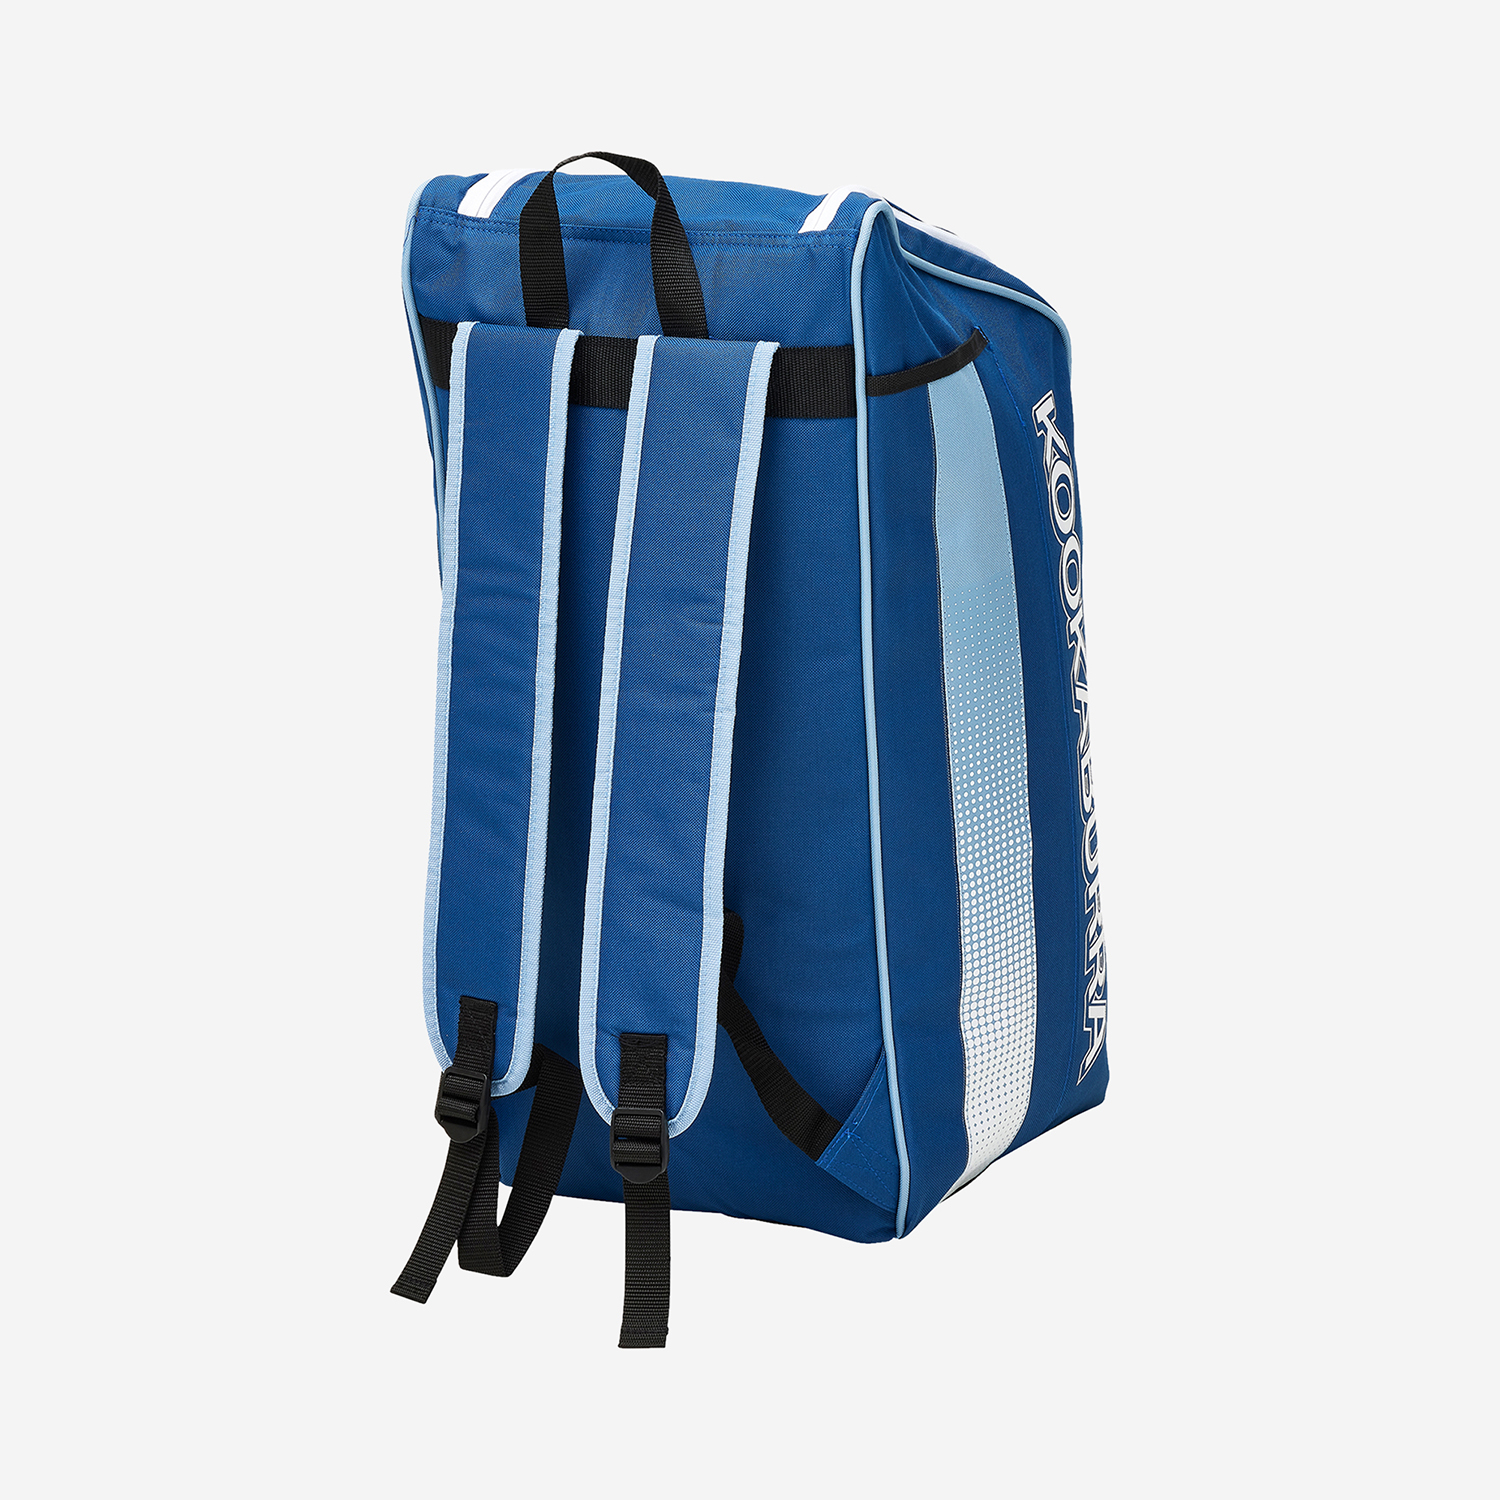 Pro 6.0 Duffle Bags